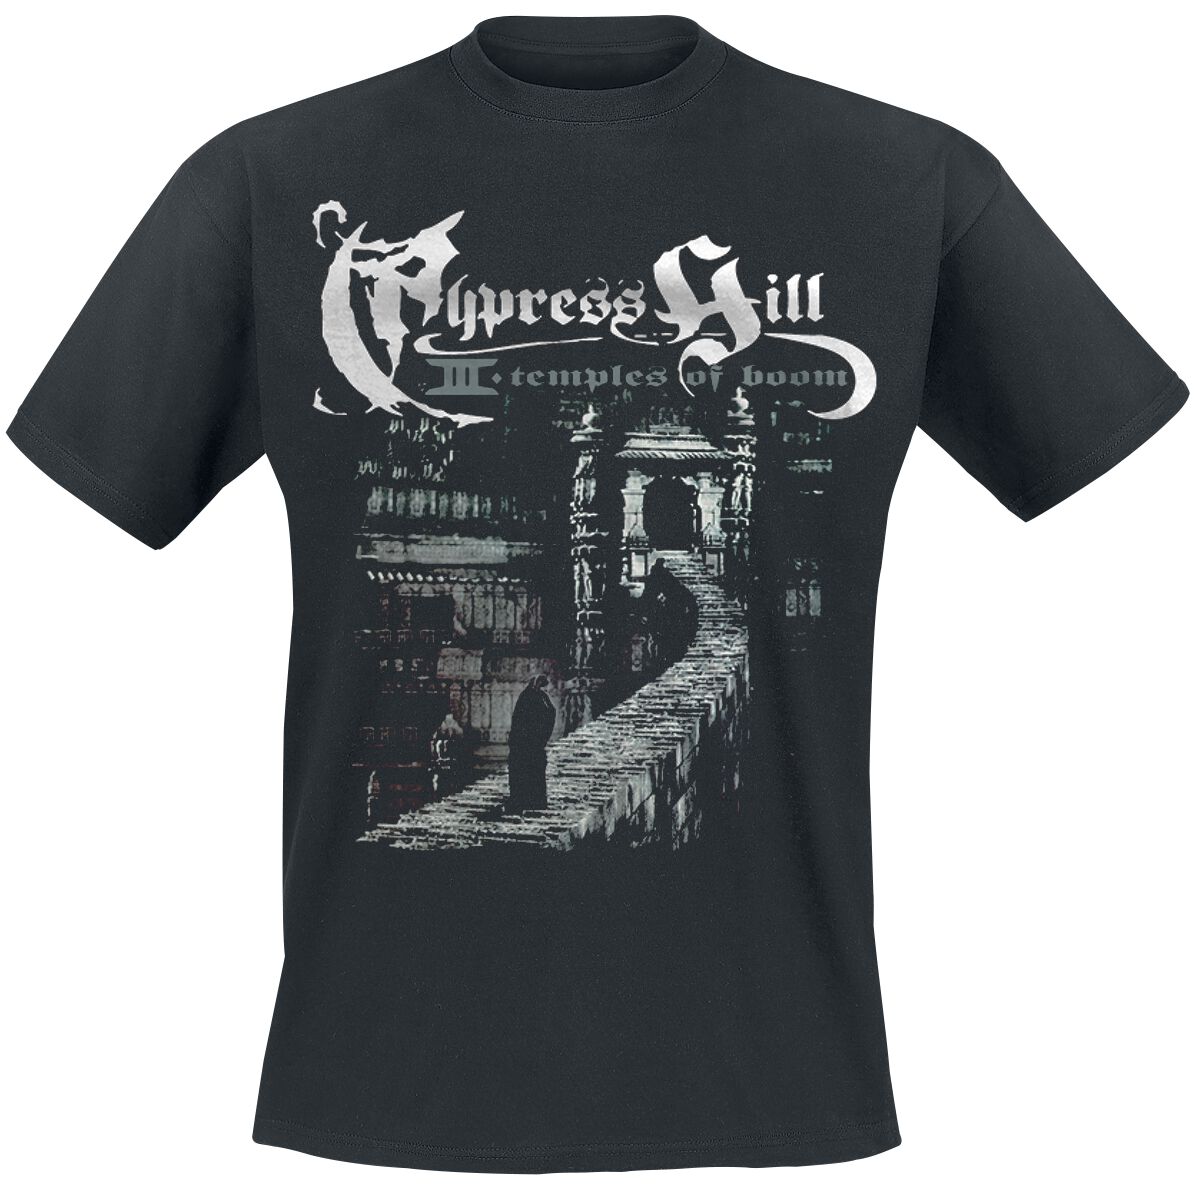 Cypress Hill T-Shirt - Temple Of Boom - S bis 5XL - für Männer - Größe XL - schwarz  - Lizenziertes Merchandise!